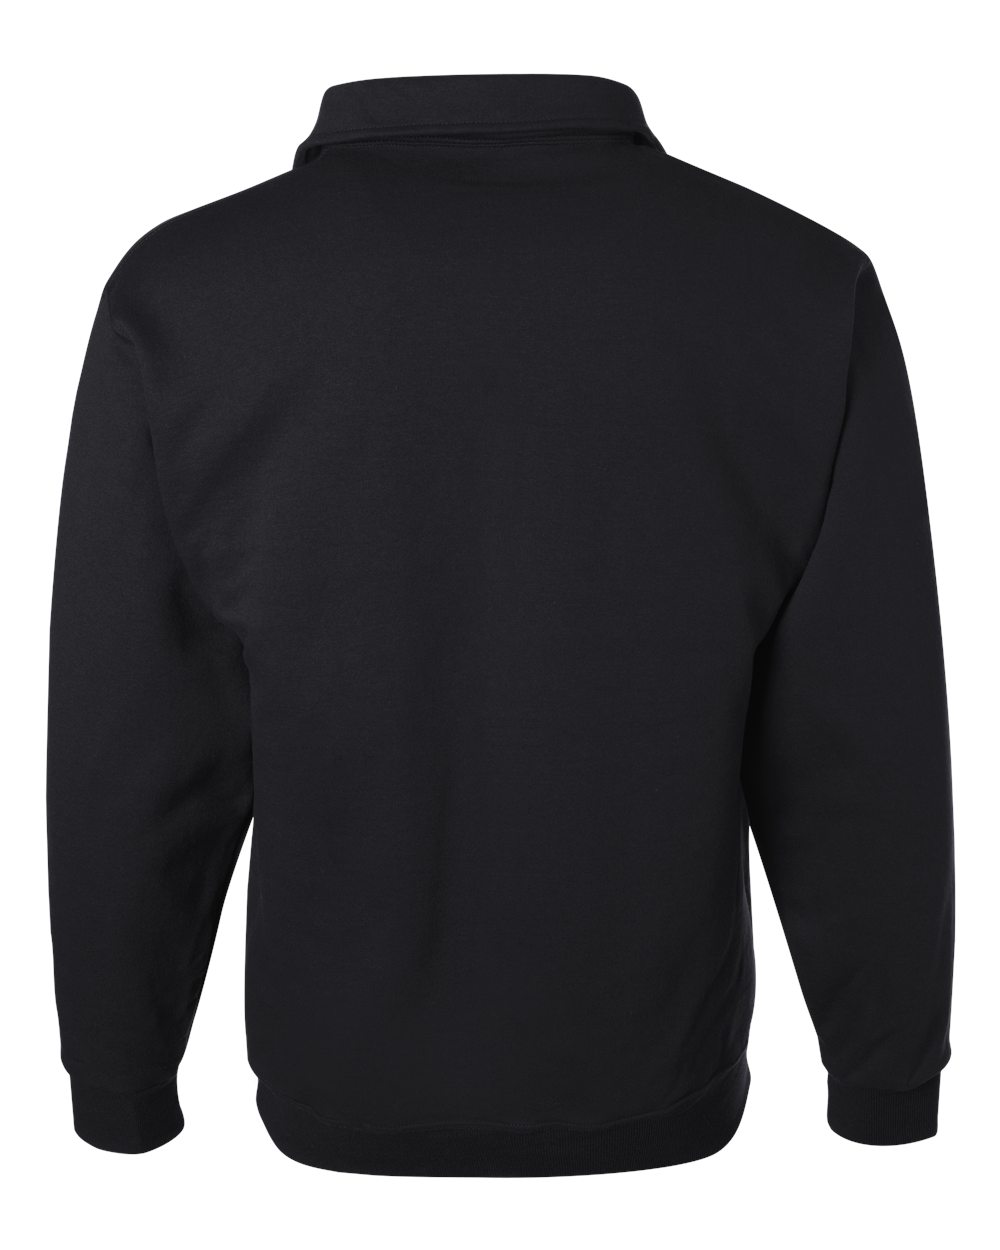 Jerzees 4528MR SUPER SWEATS Quarter-Zip Cadet Collar Sweatshirt